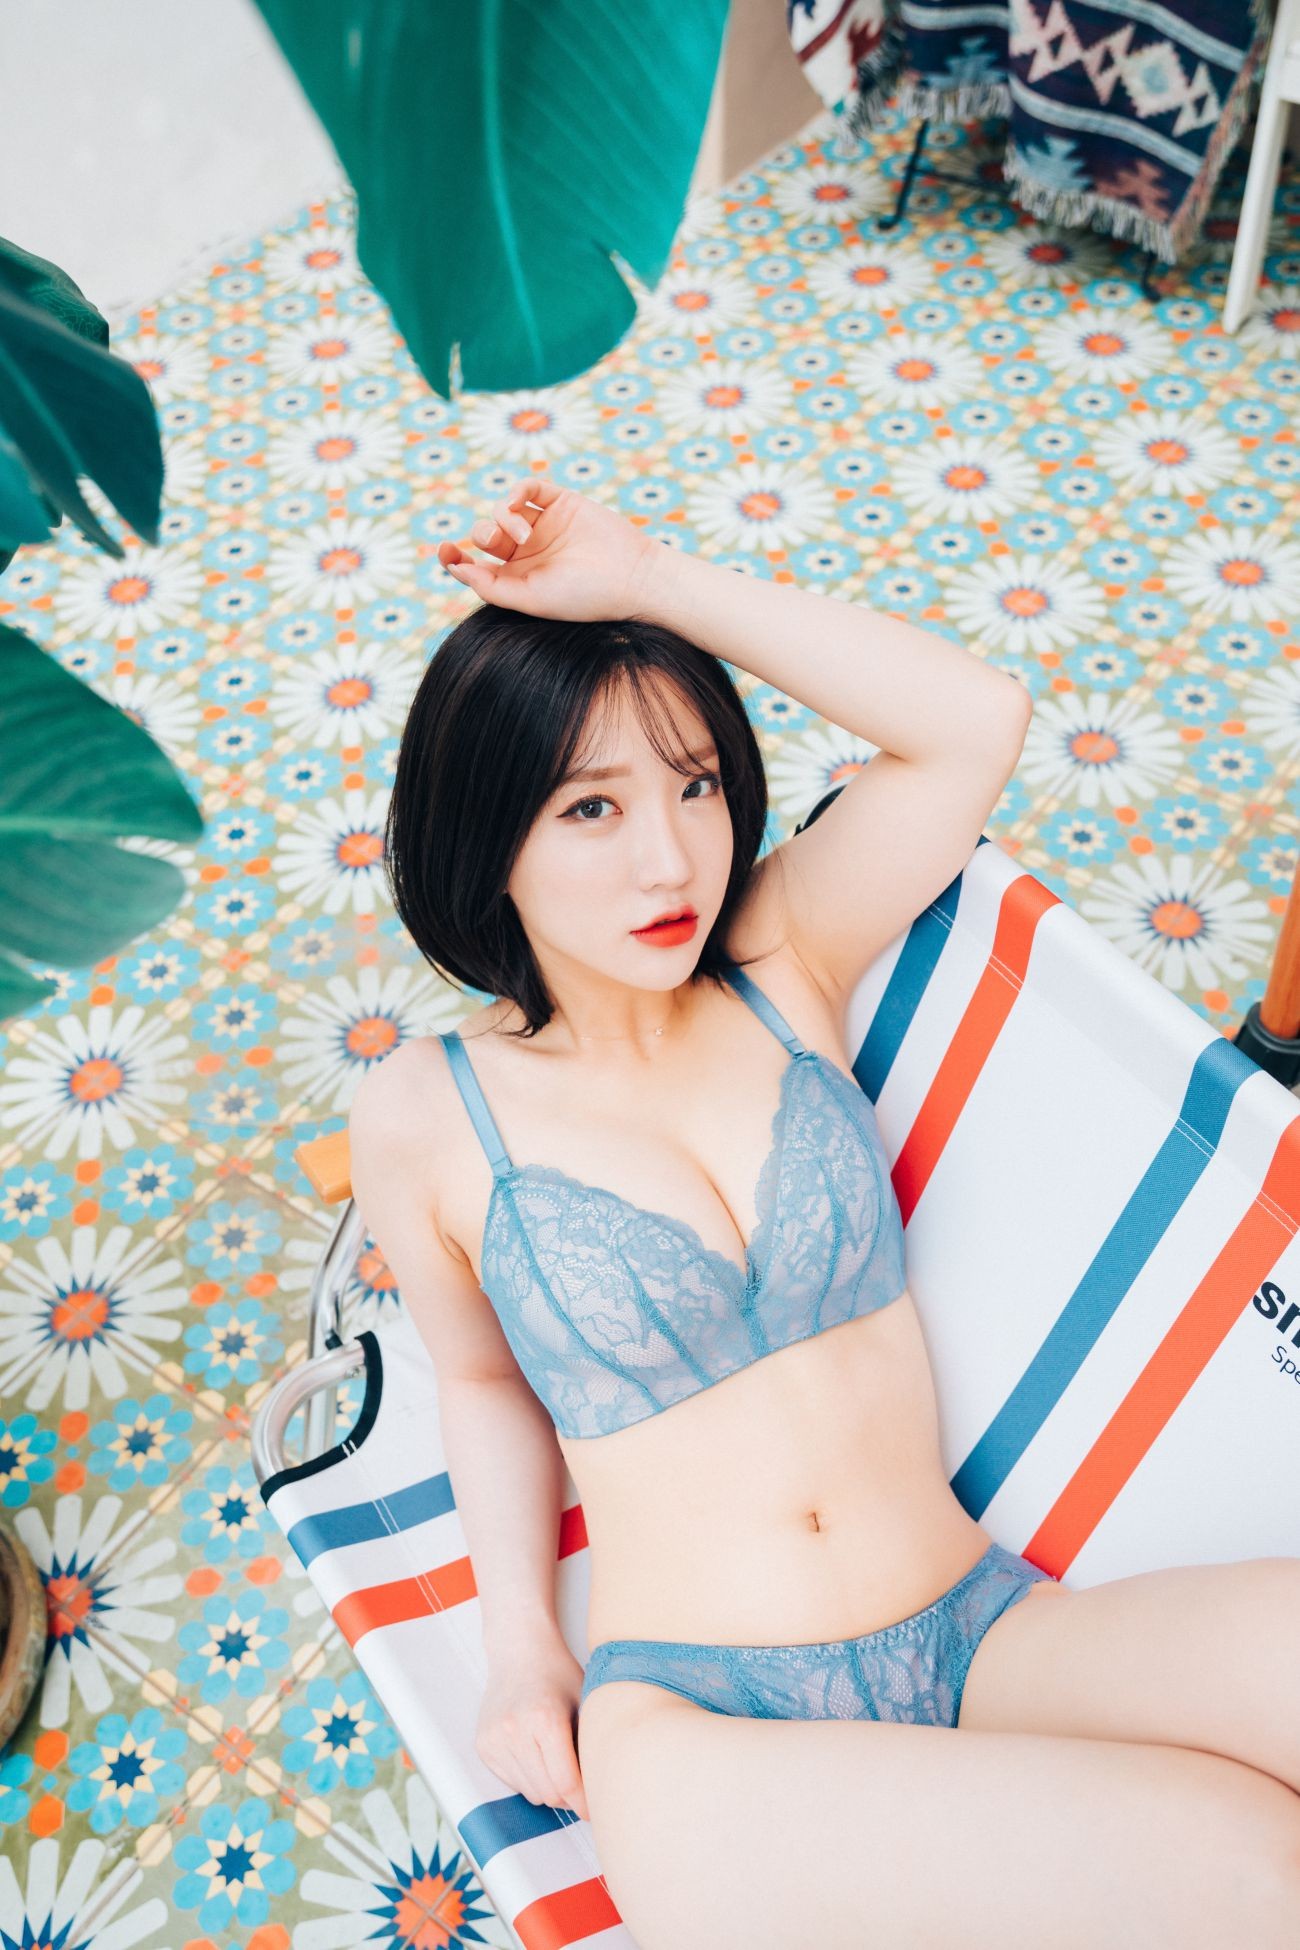 LOOZY Yeeun Summer Caravan (39)